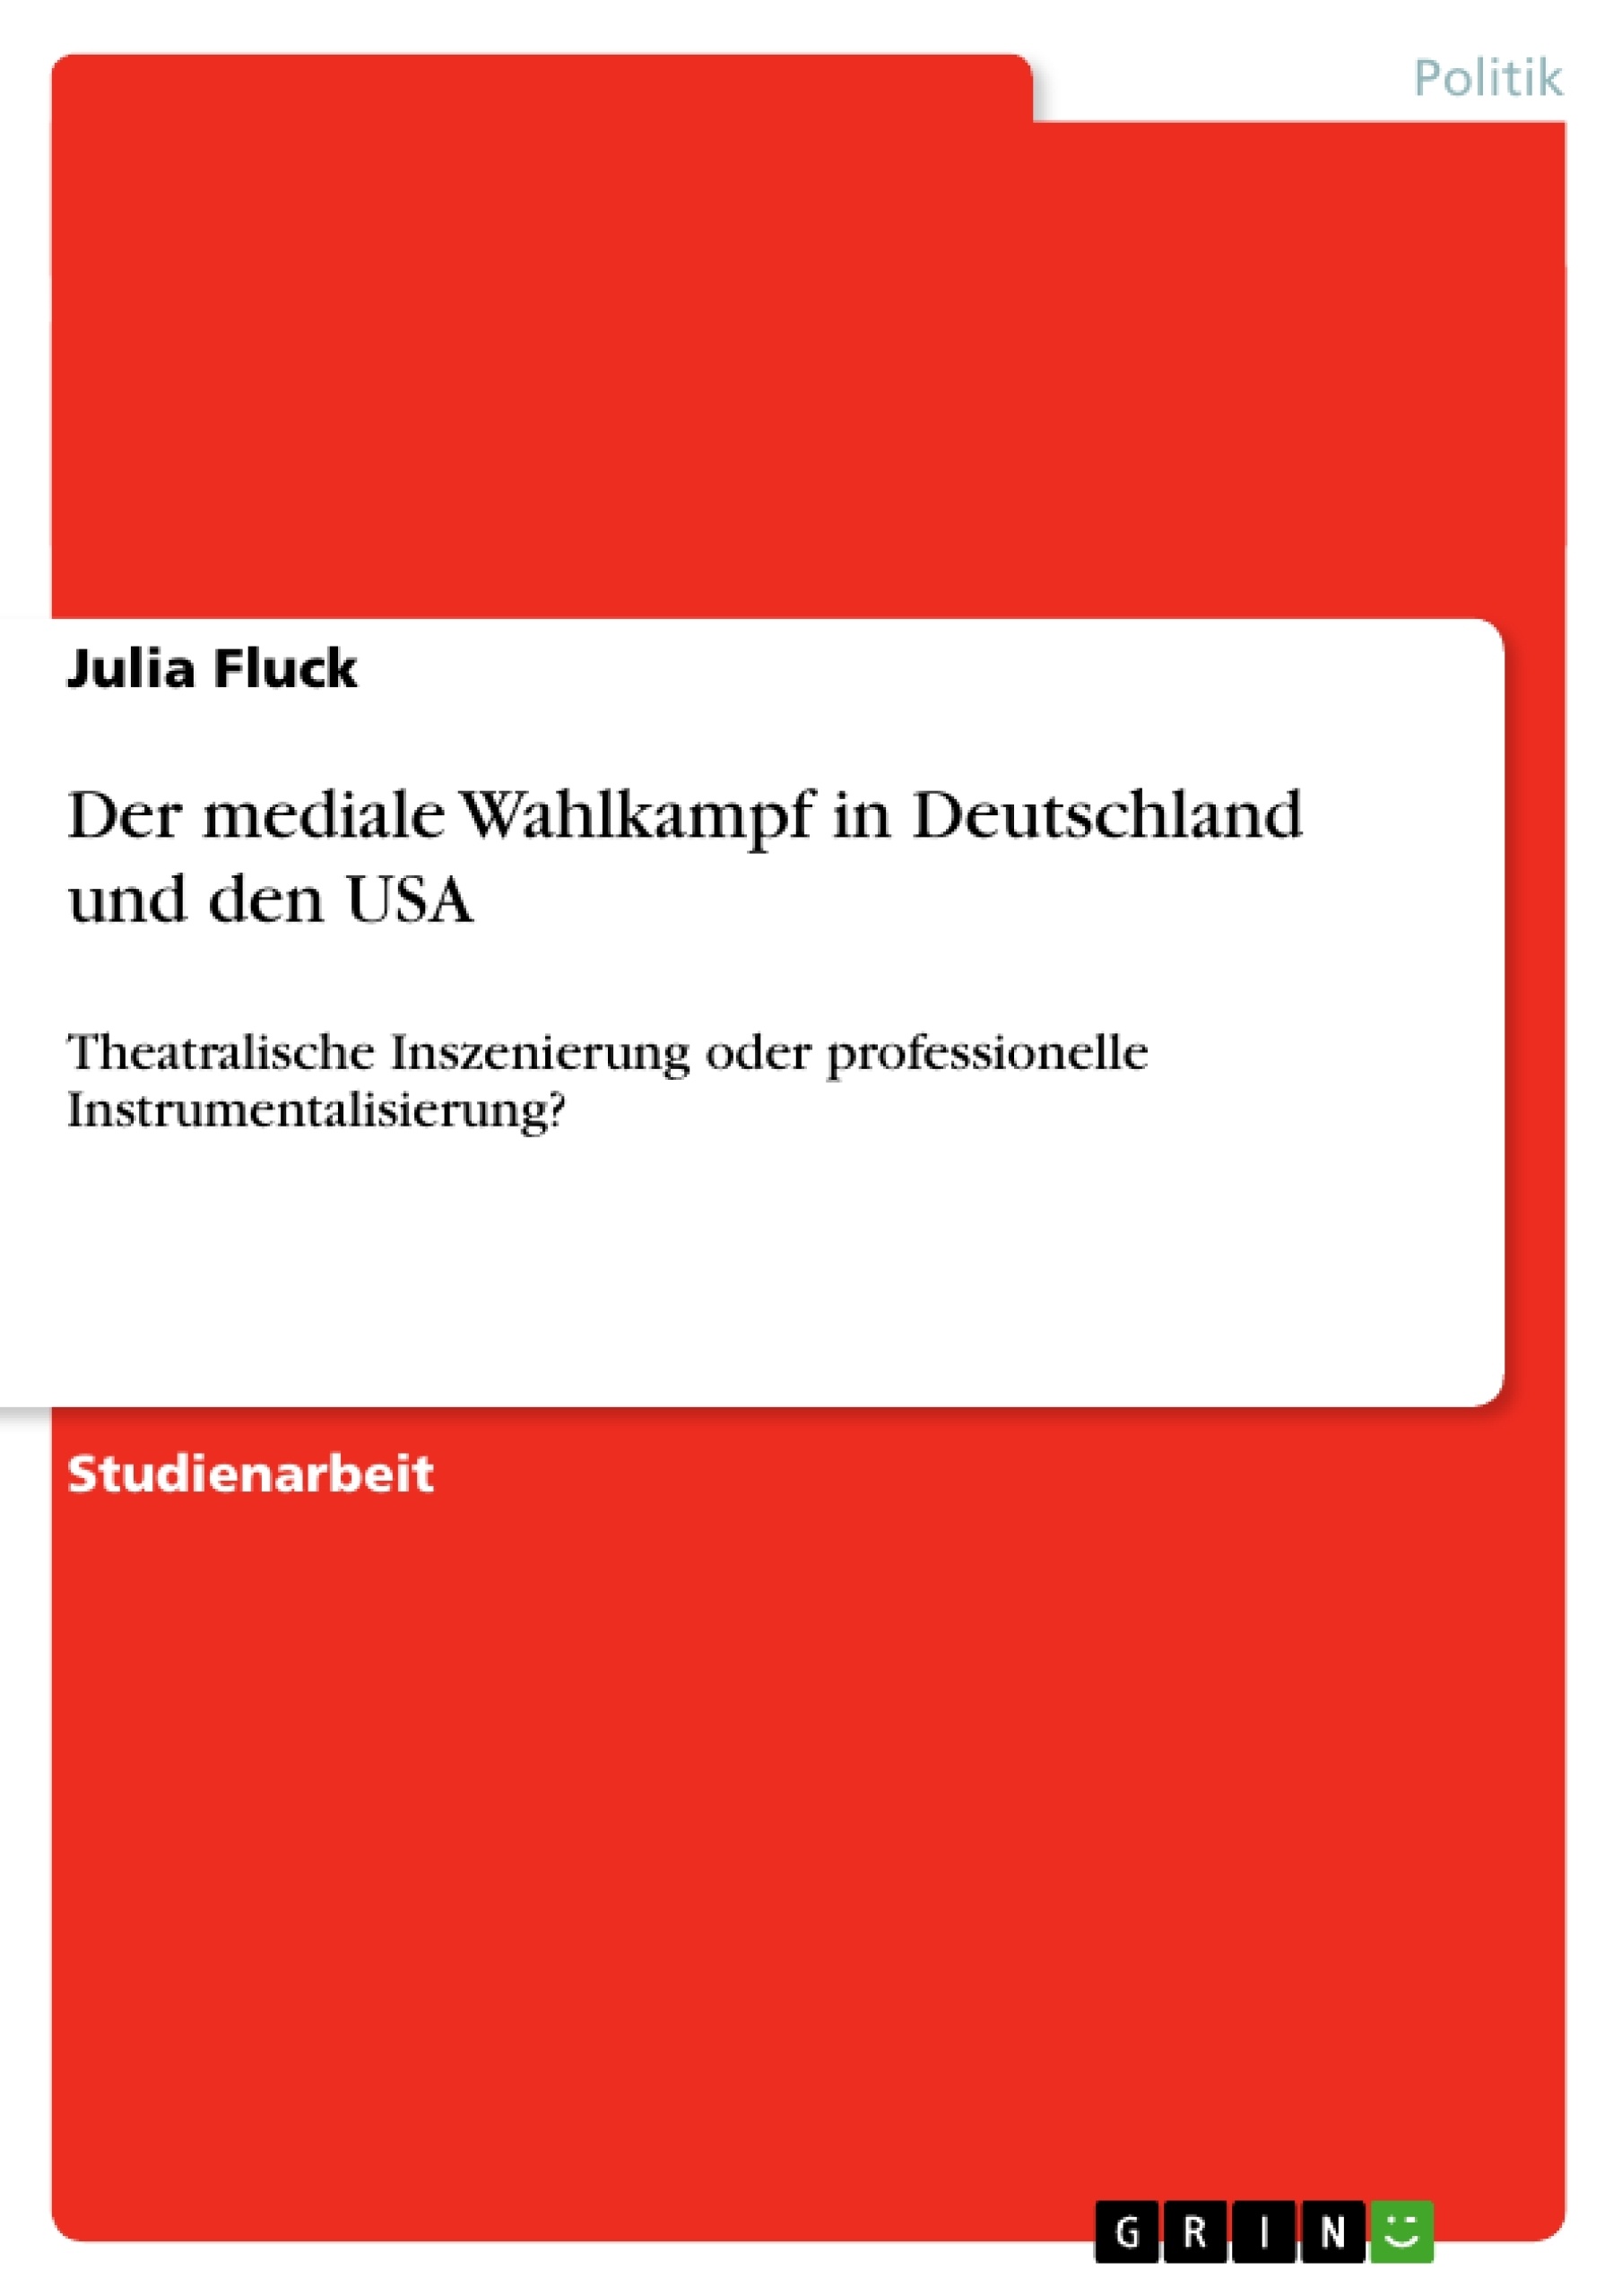 Title: Der mediale Wahlkampf in Deutschland und den USA